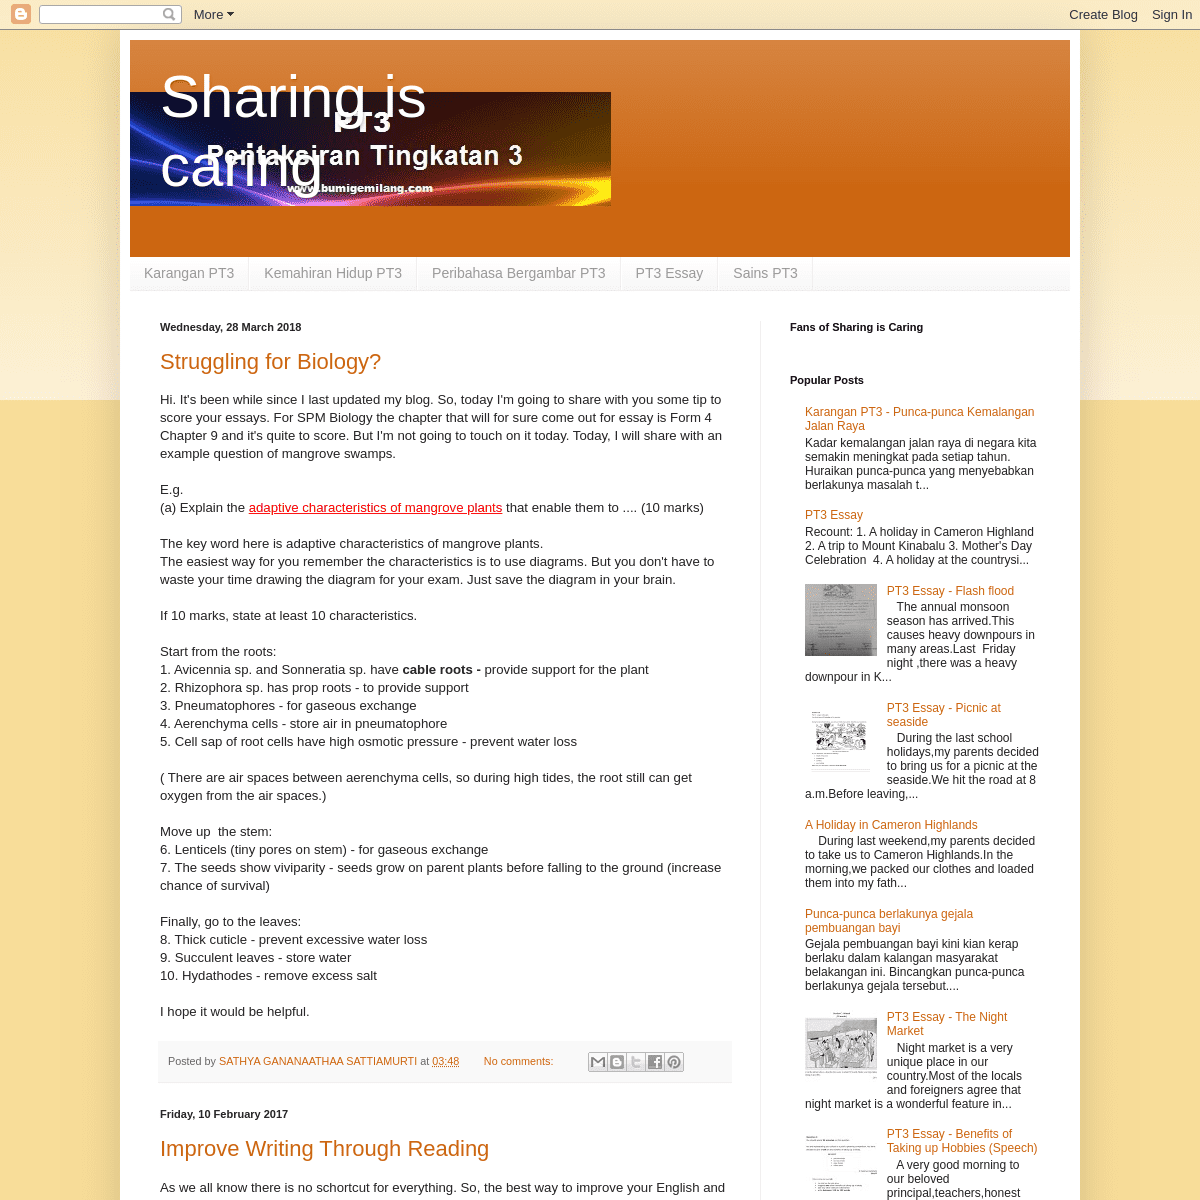 A complete backup of studytogether1234.blogspot.com